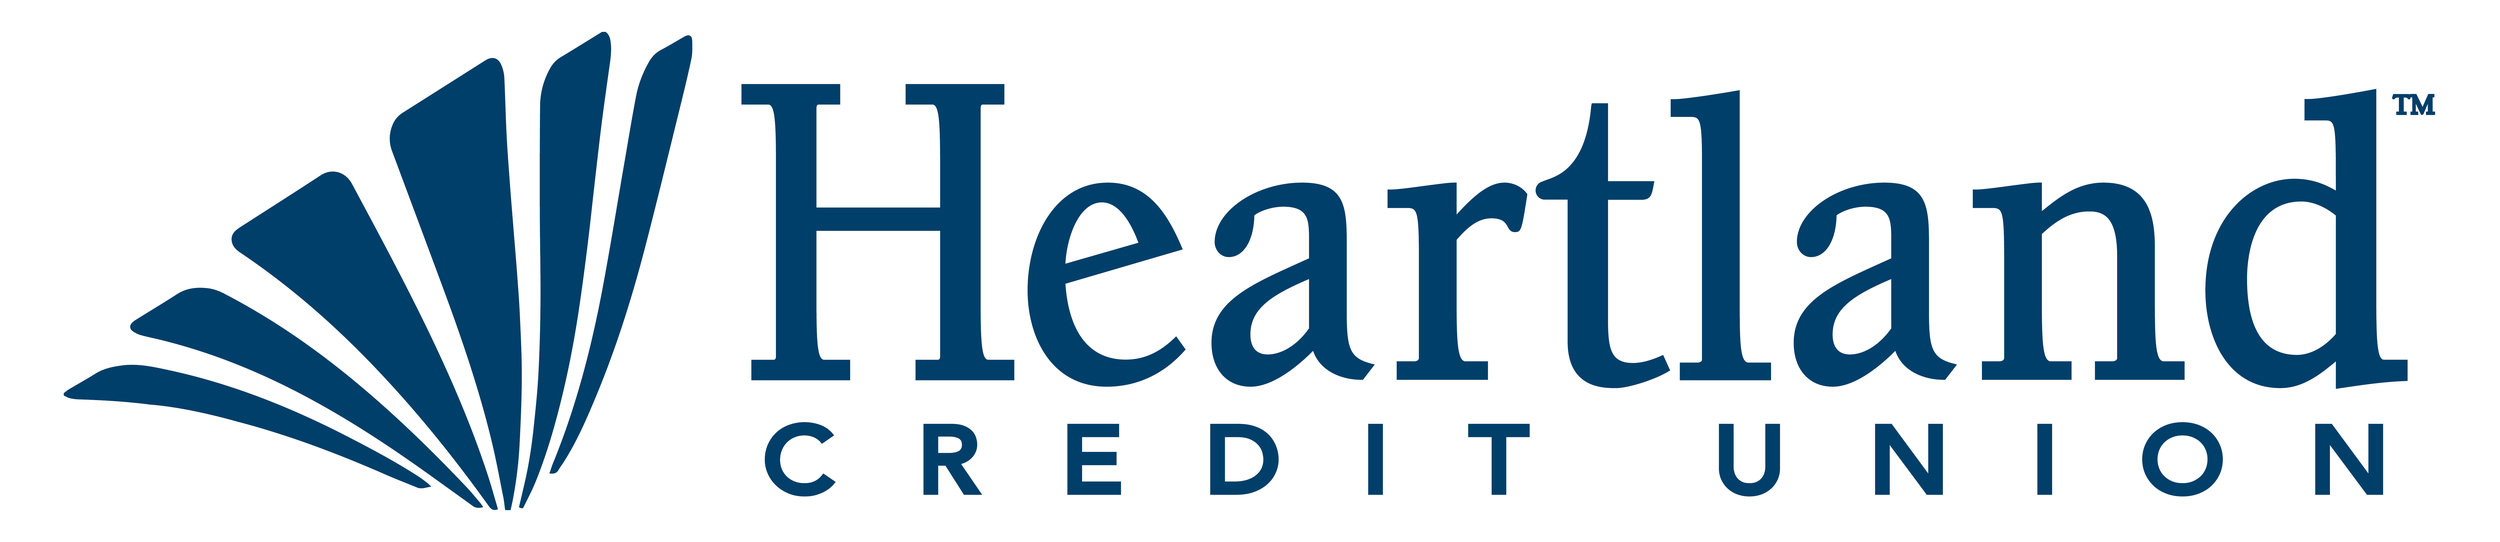 Heartland CU Logo - Web.jpg